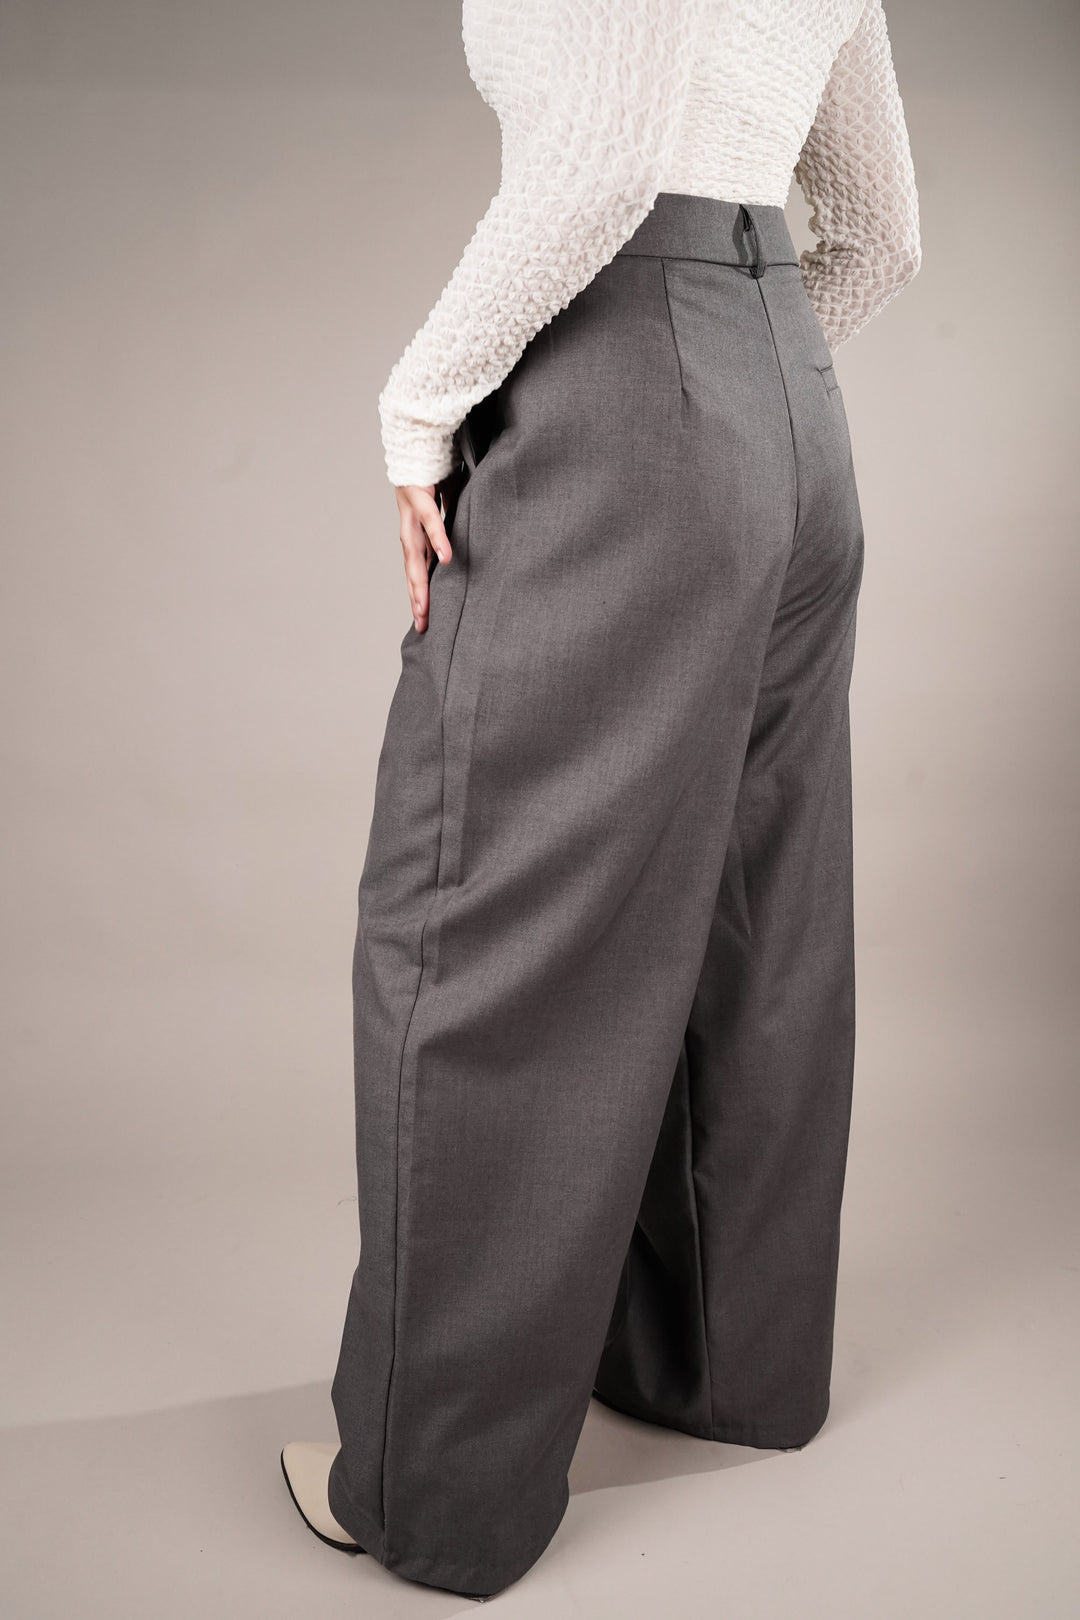 Draped Grey Asymmetrical Pants